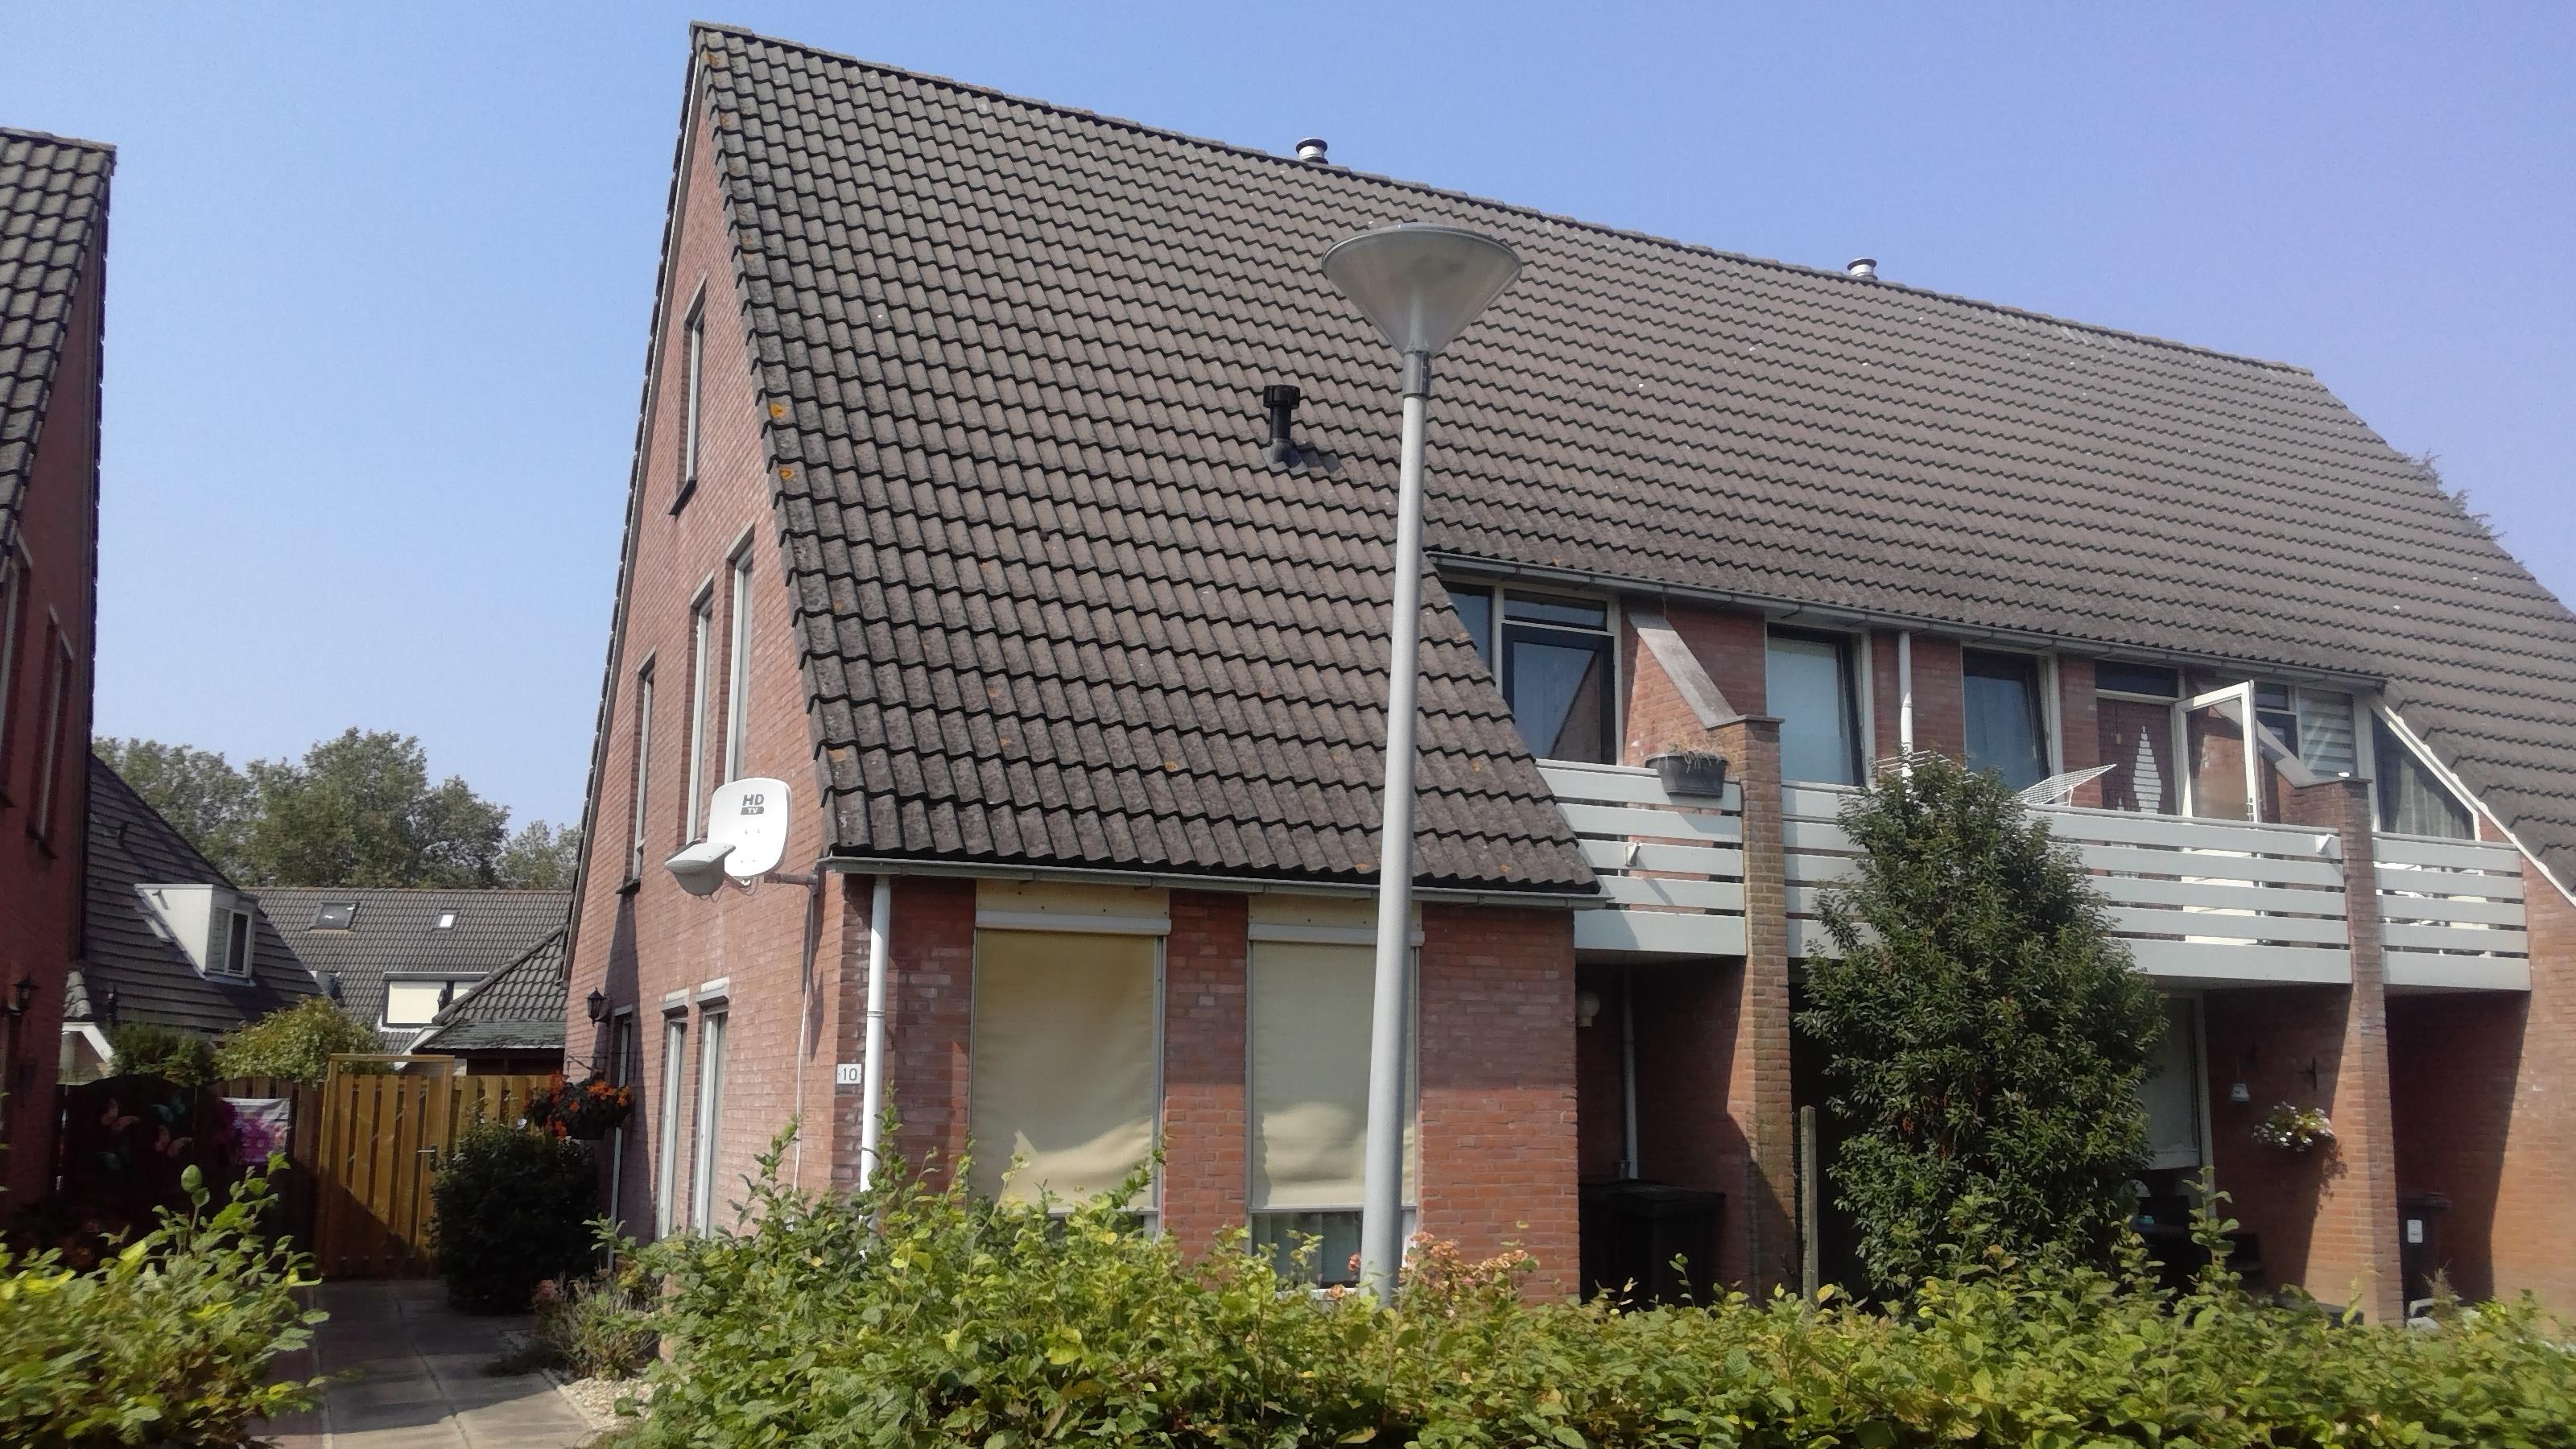 Nieuwenburgh 8, 6686 DP Doornenburg, Nederland